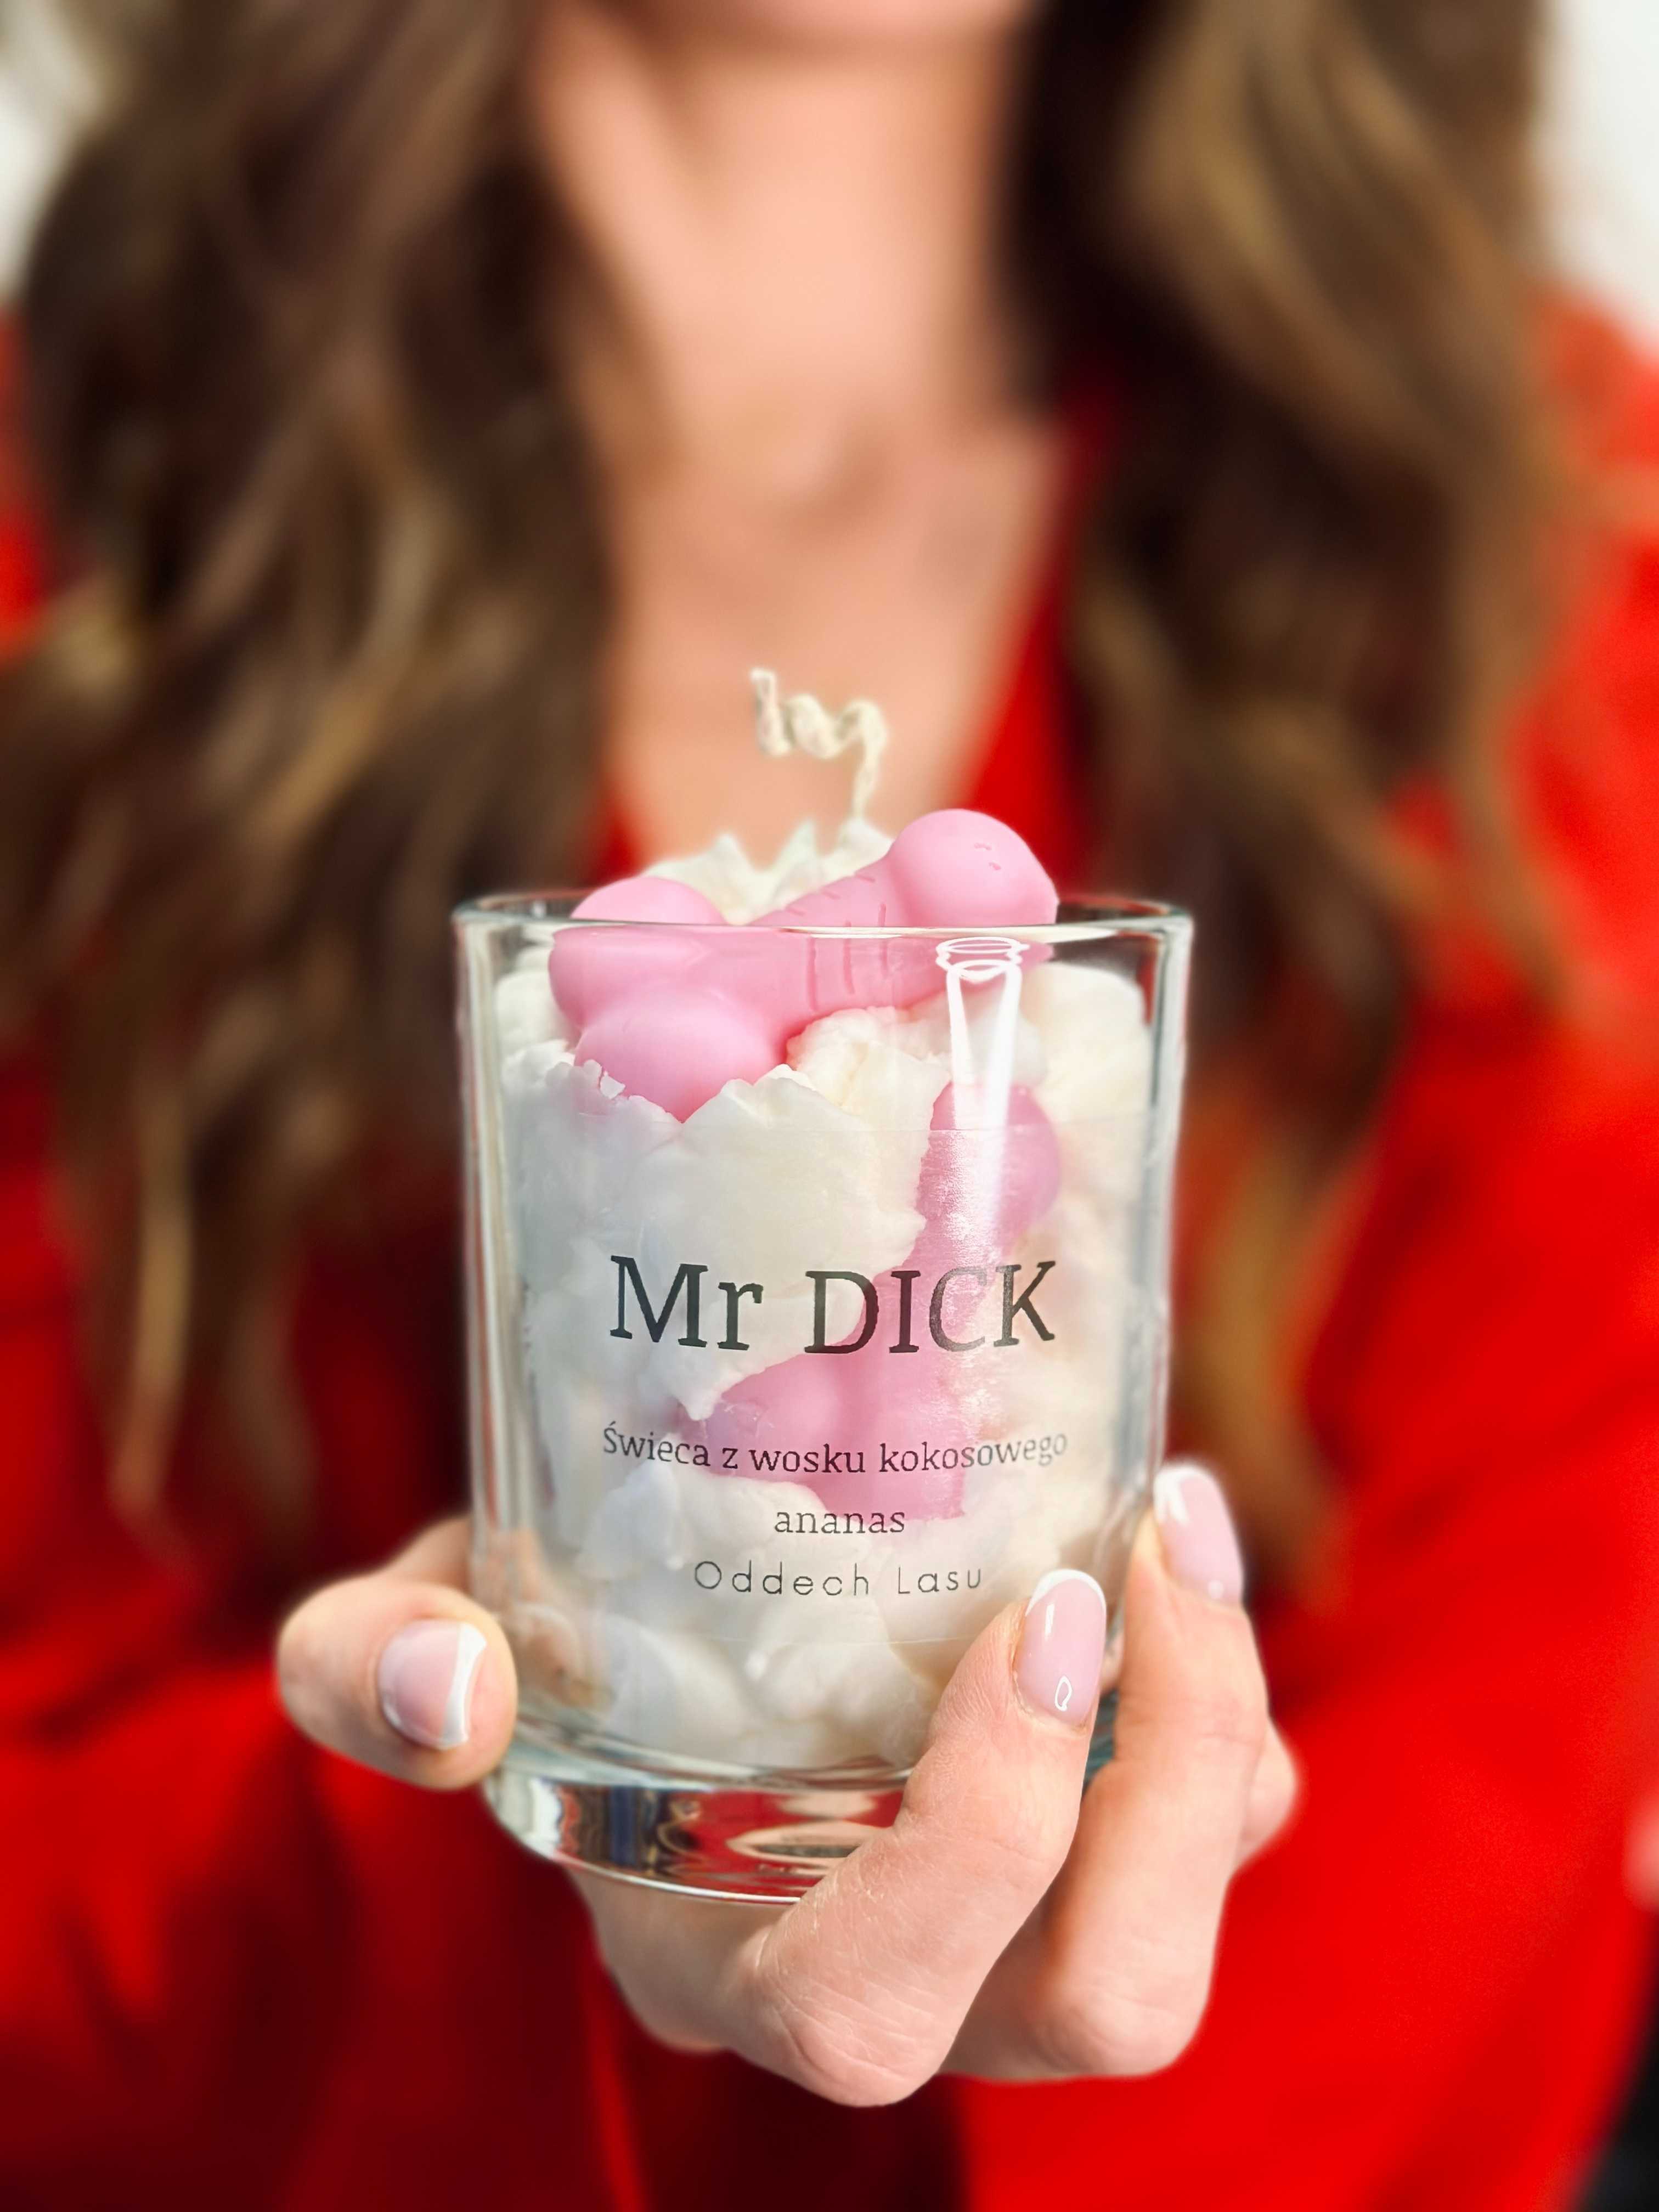 Mr Dick, świeca z wosku kokosowego, zapachowa, zalewana w szkle